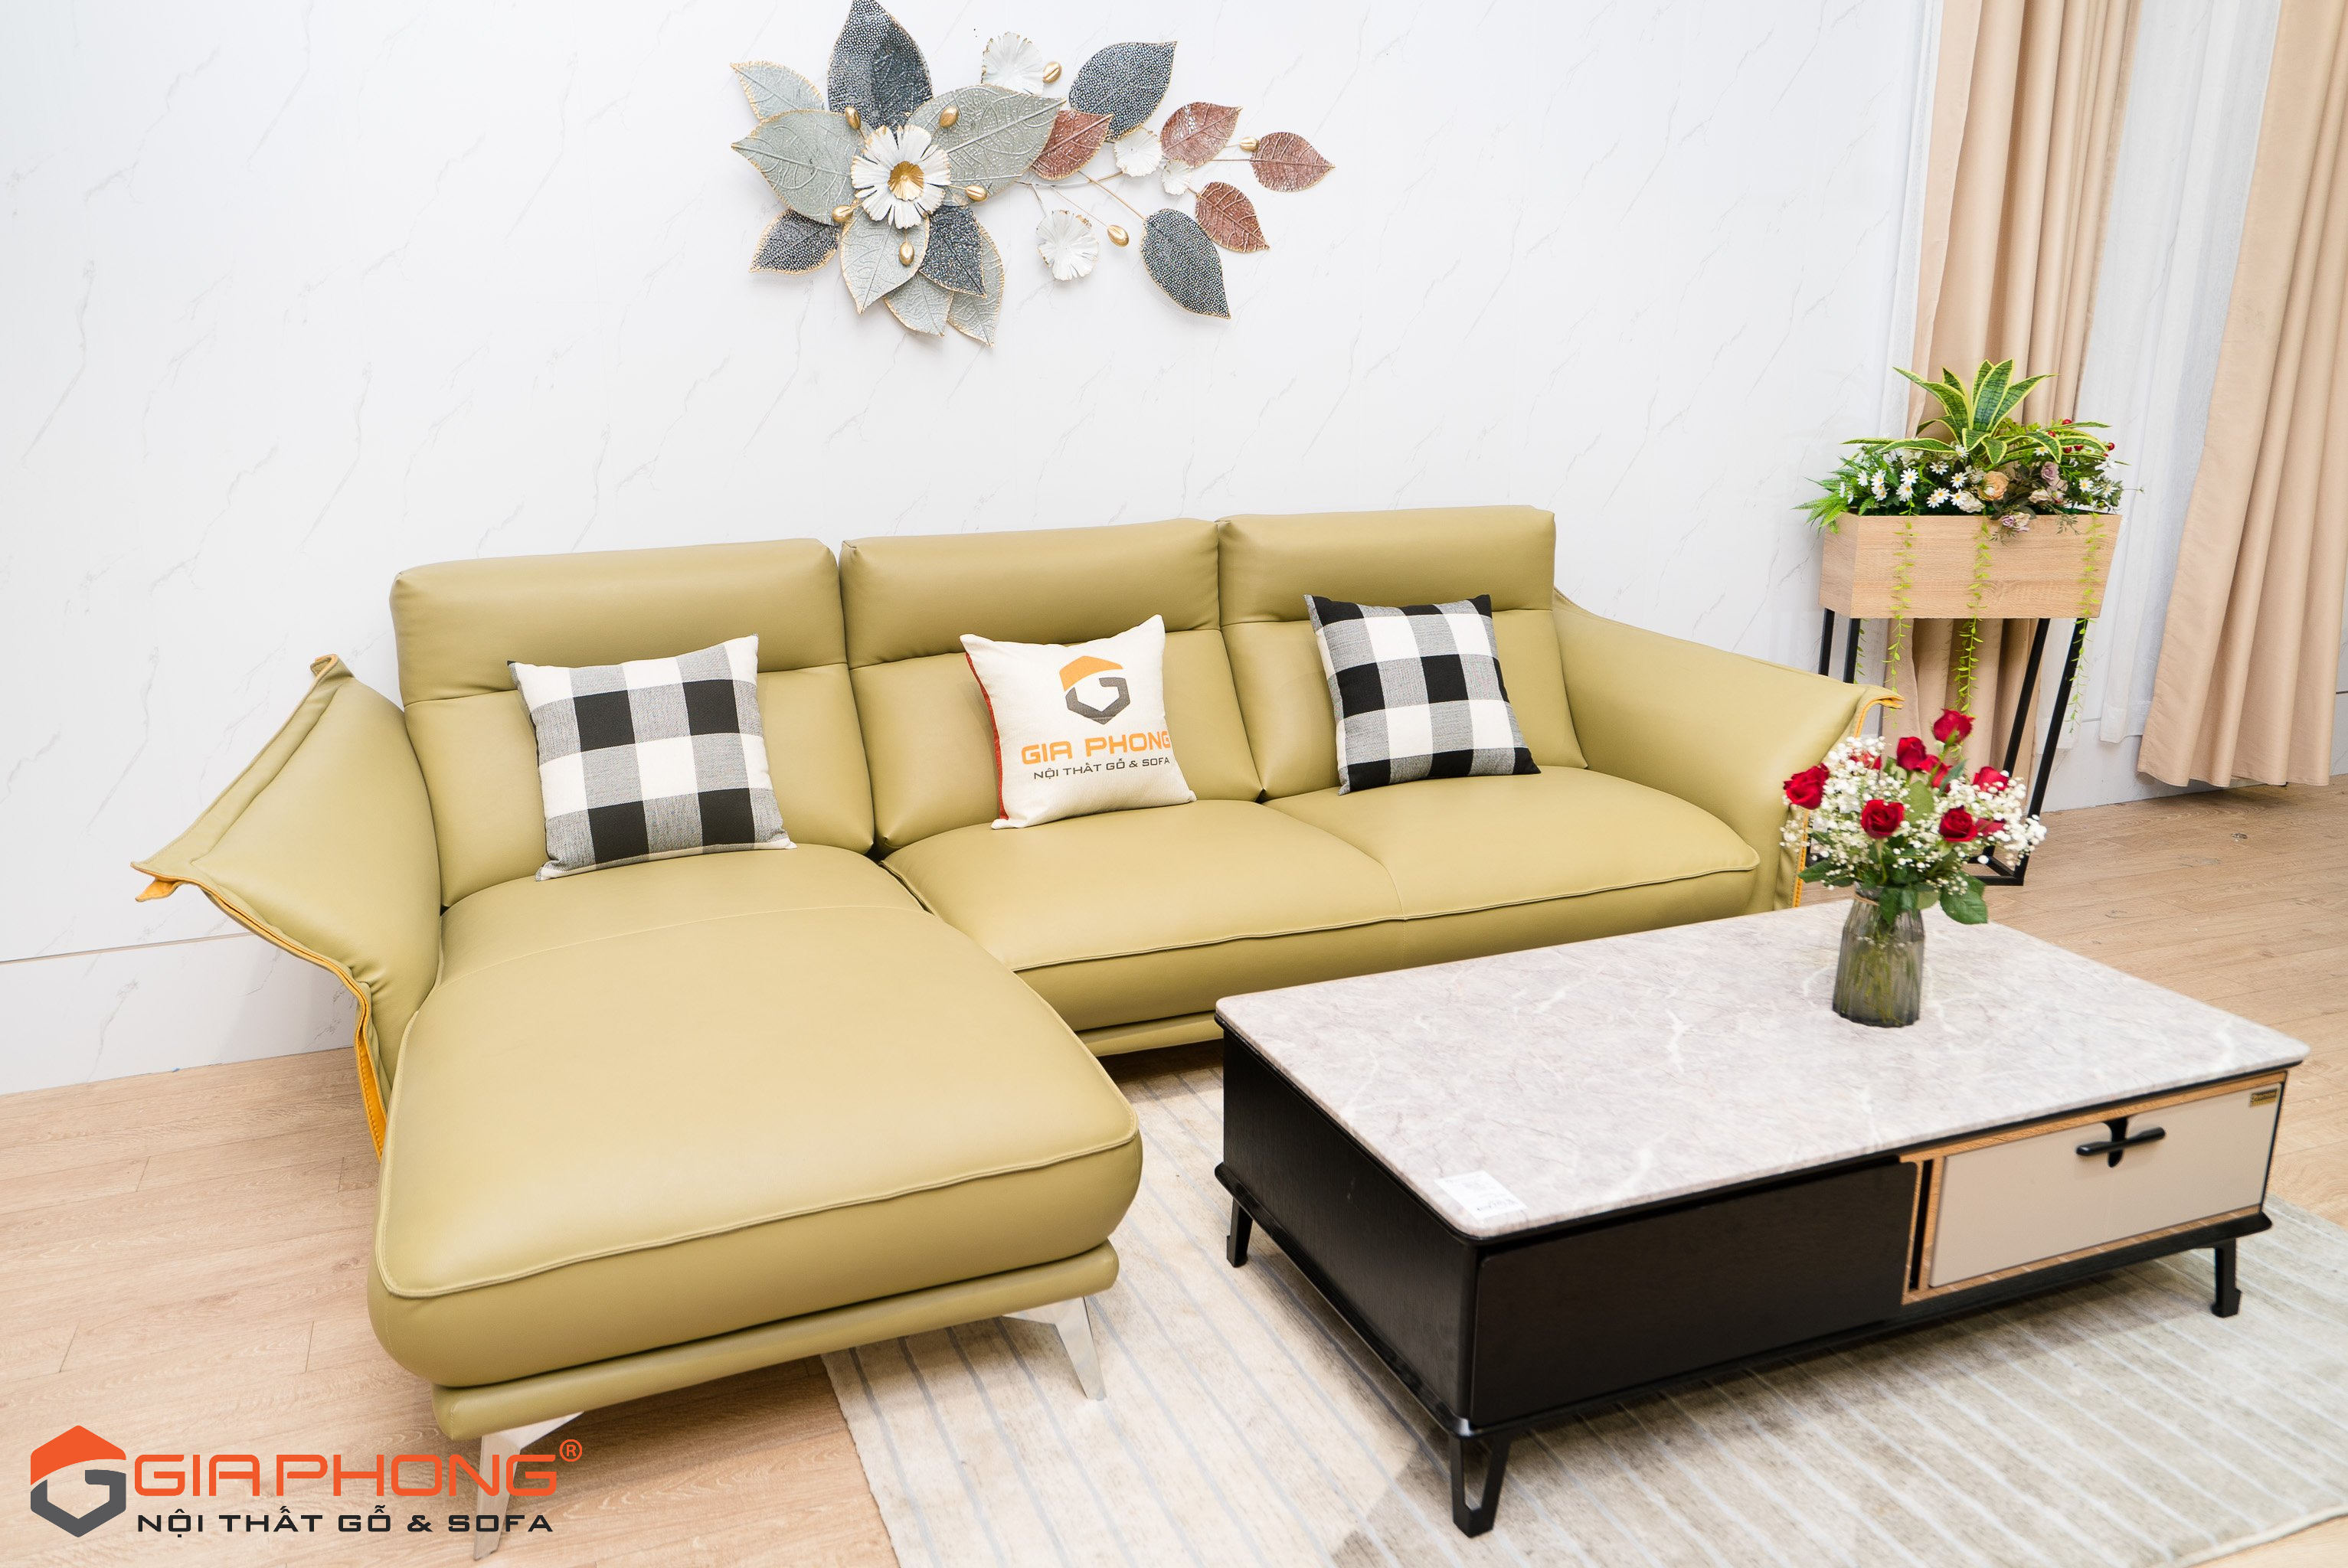 Sofa da VN64